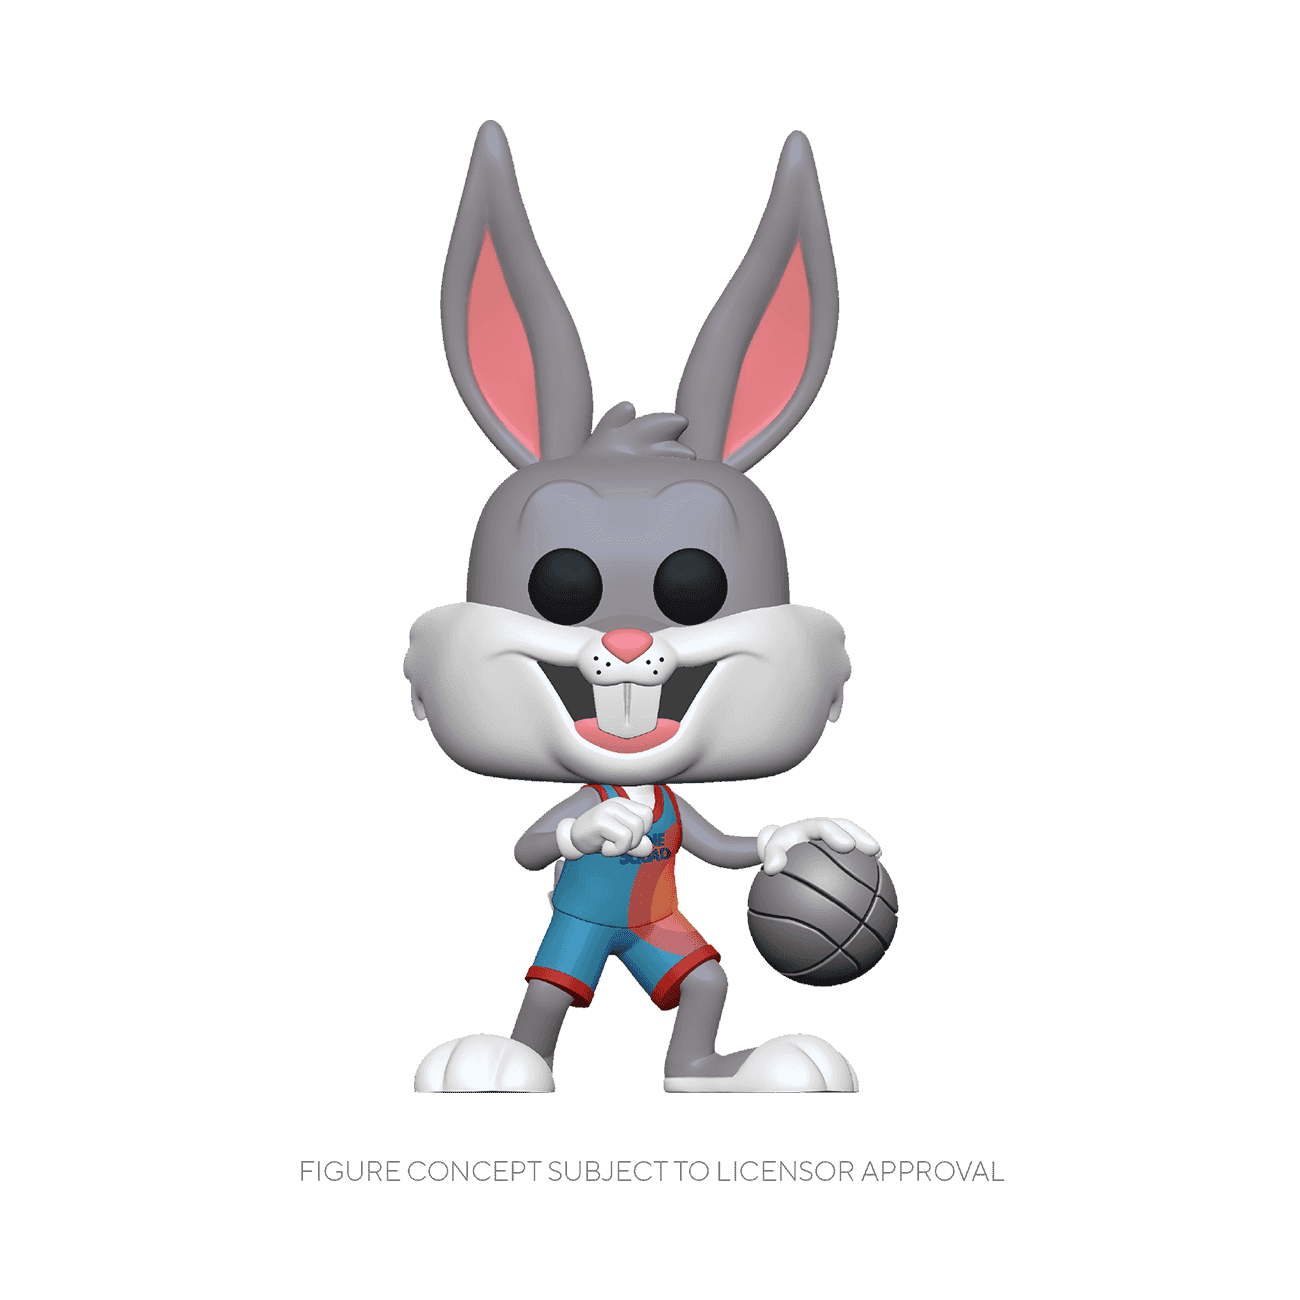 image de Bugs Bunny